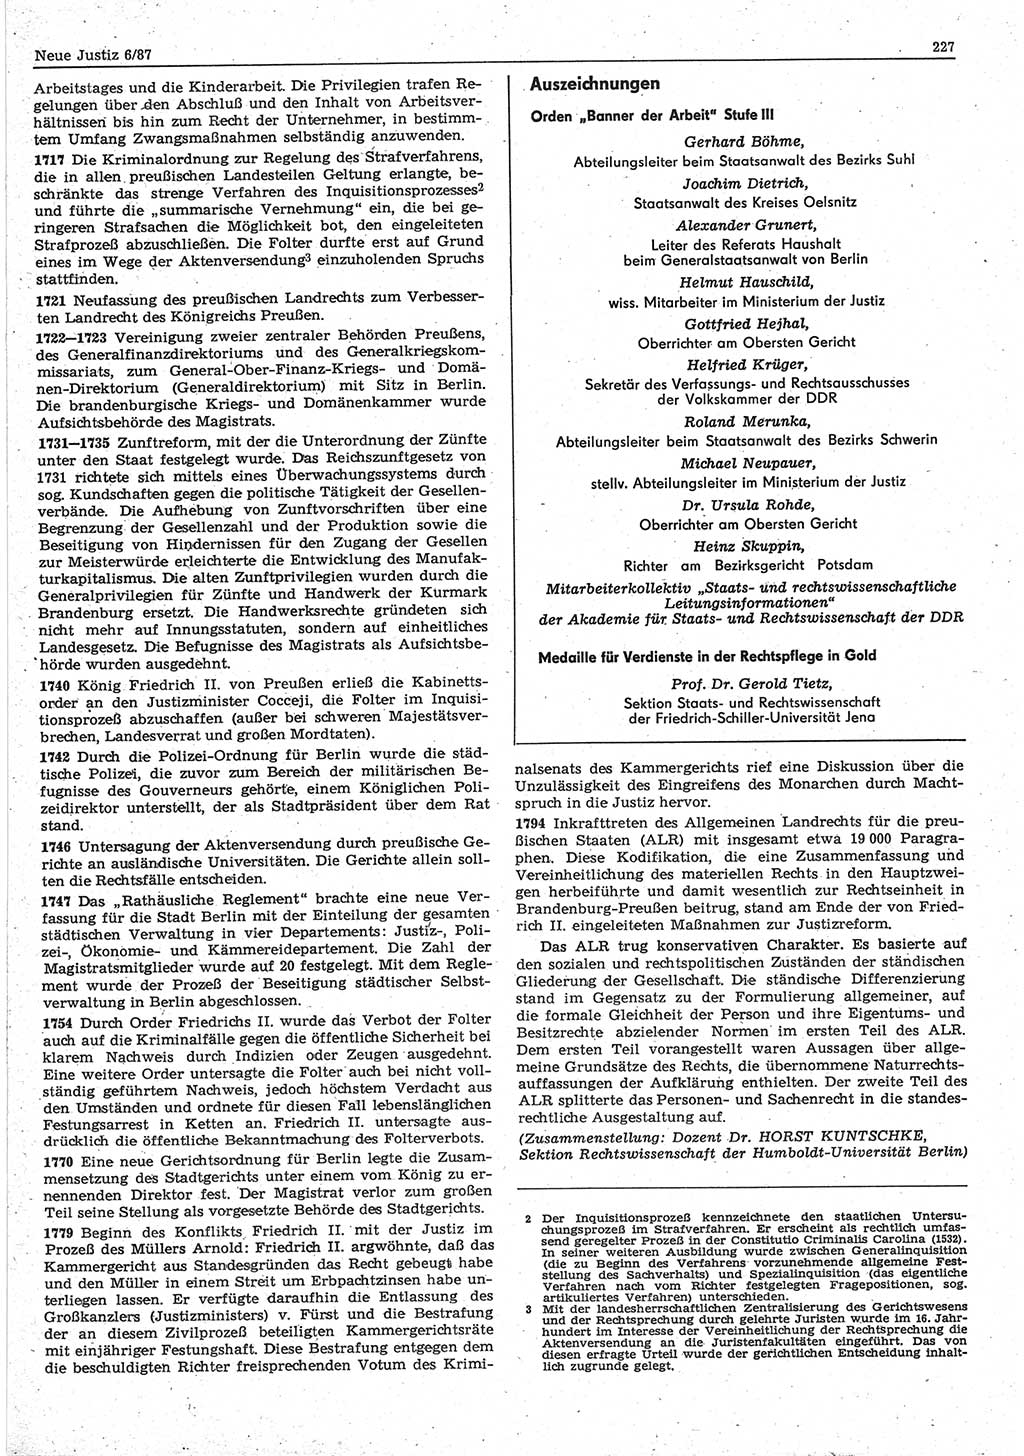 Neue Justiz (NJ), Zeitschrift für sozialistisches Recht und Gesetzlichkeit [Deutsche Demokratische Republik (DDR)], 41. Jahrgang 1987, Seite 227 (NJ DDR 1987, S. 227)